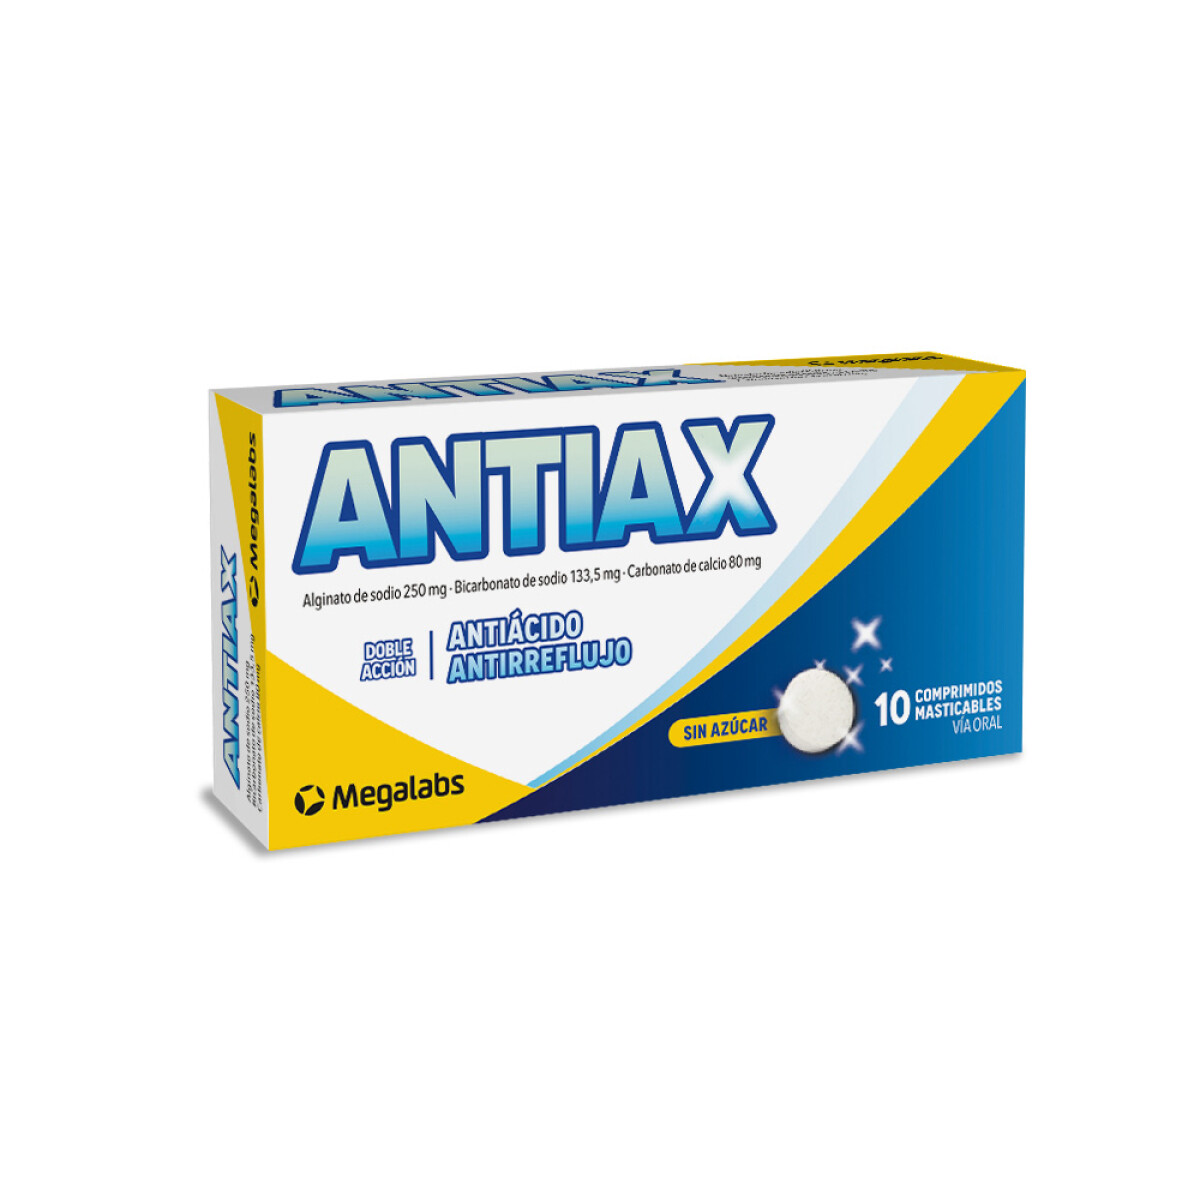 Antiax Comprimidos Masticables 